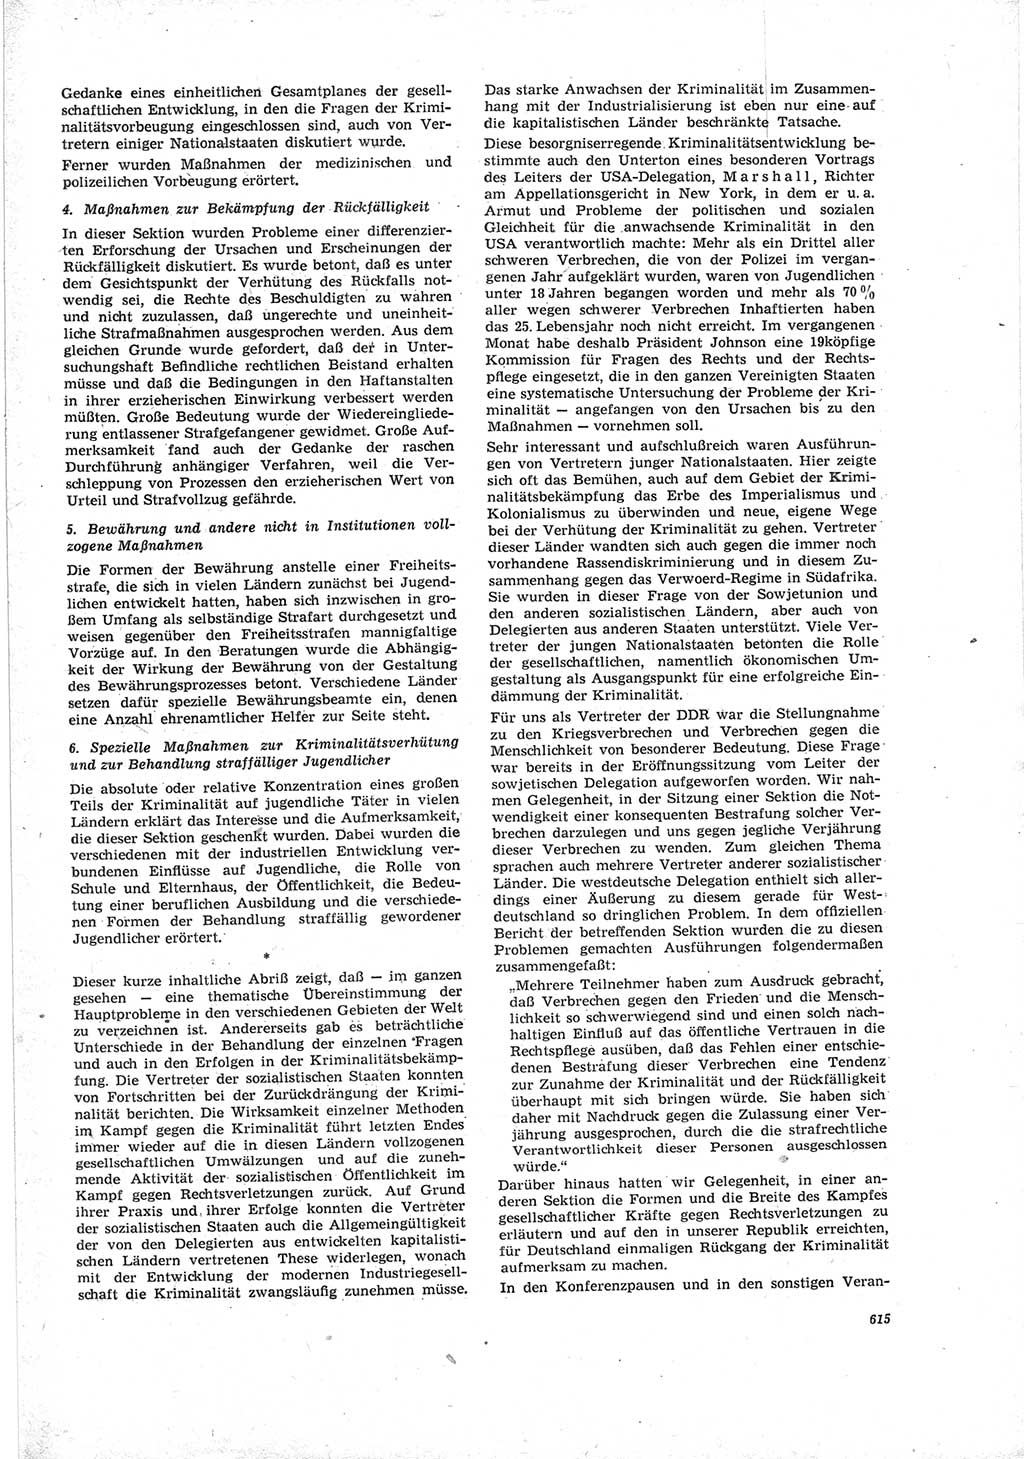 Neue Justiz (NJ), Zeitschrift für Recht und Rechtswissenschaft [Deutsche Demokratische Republik (DDR)], 19. Jahrgang 1965, Seite 615 (NJ DDR 1965, S. 615)